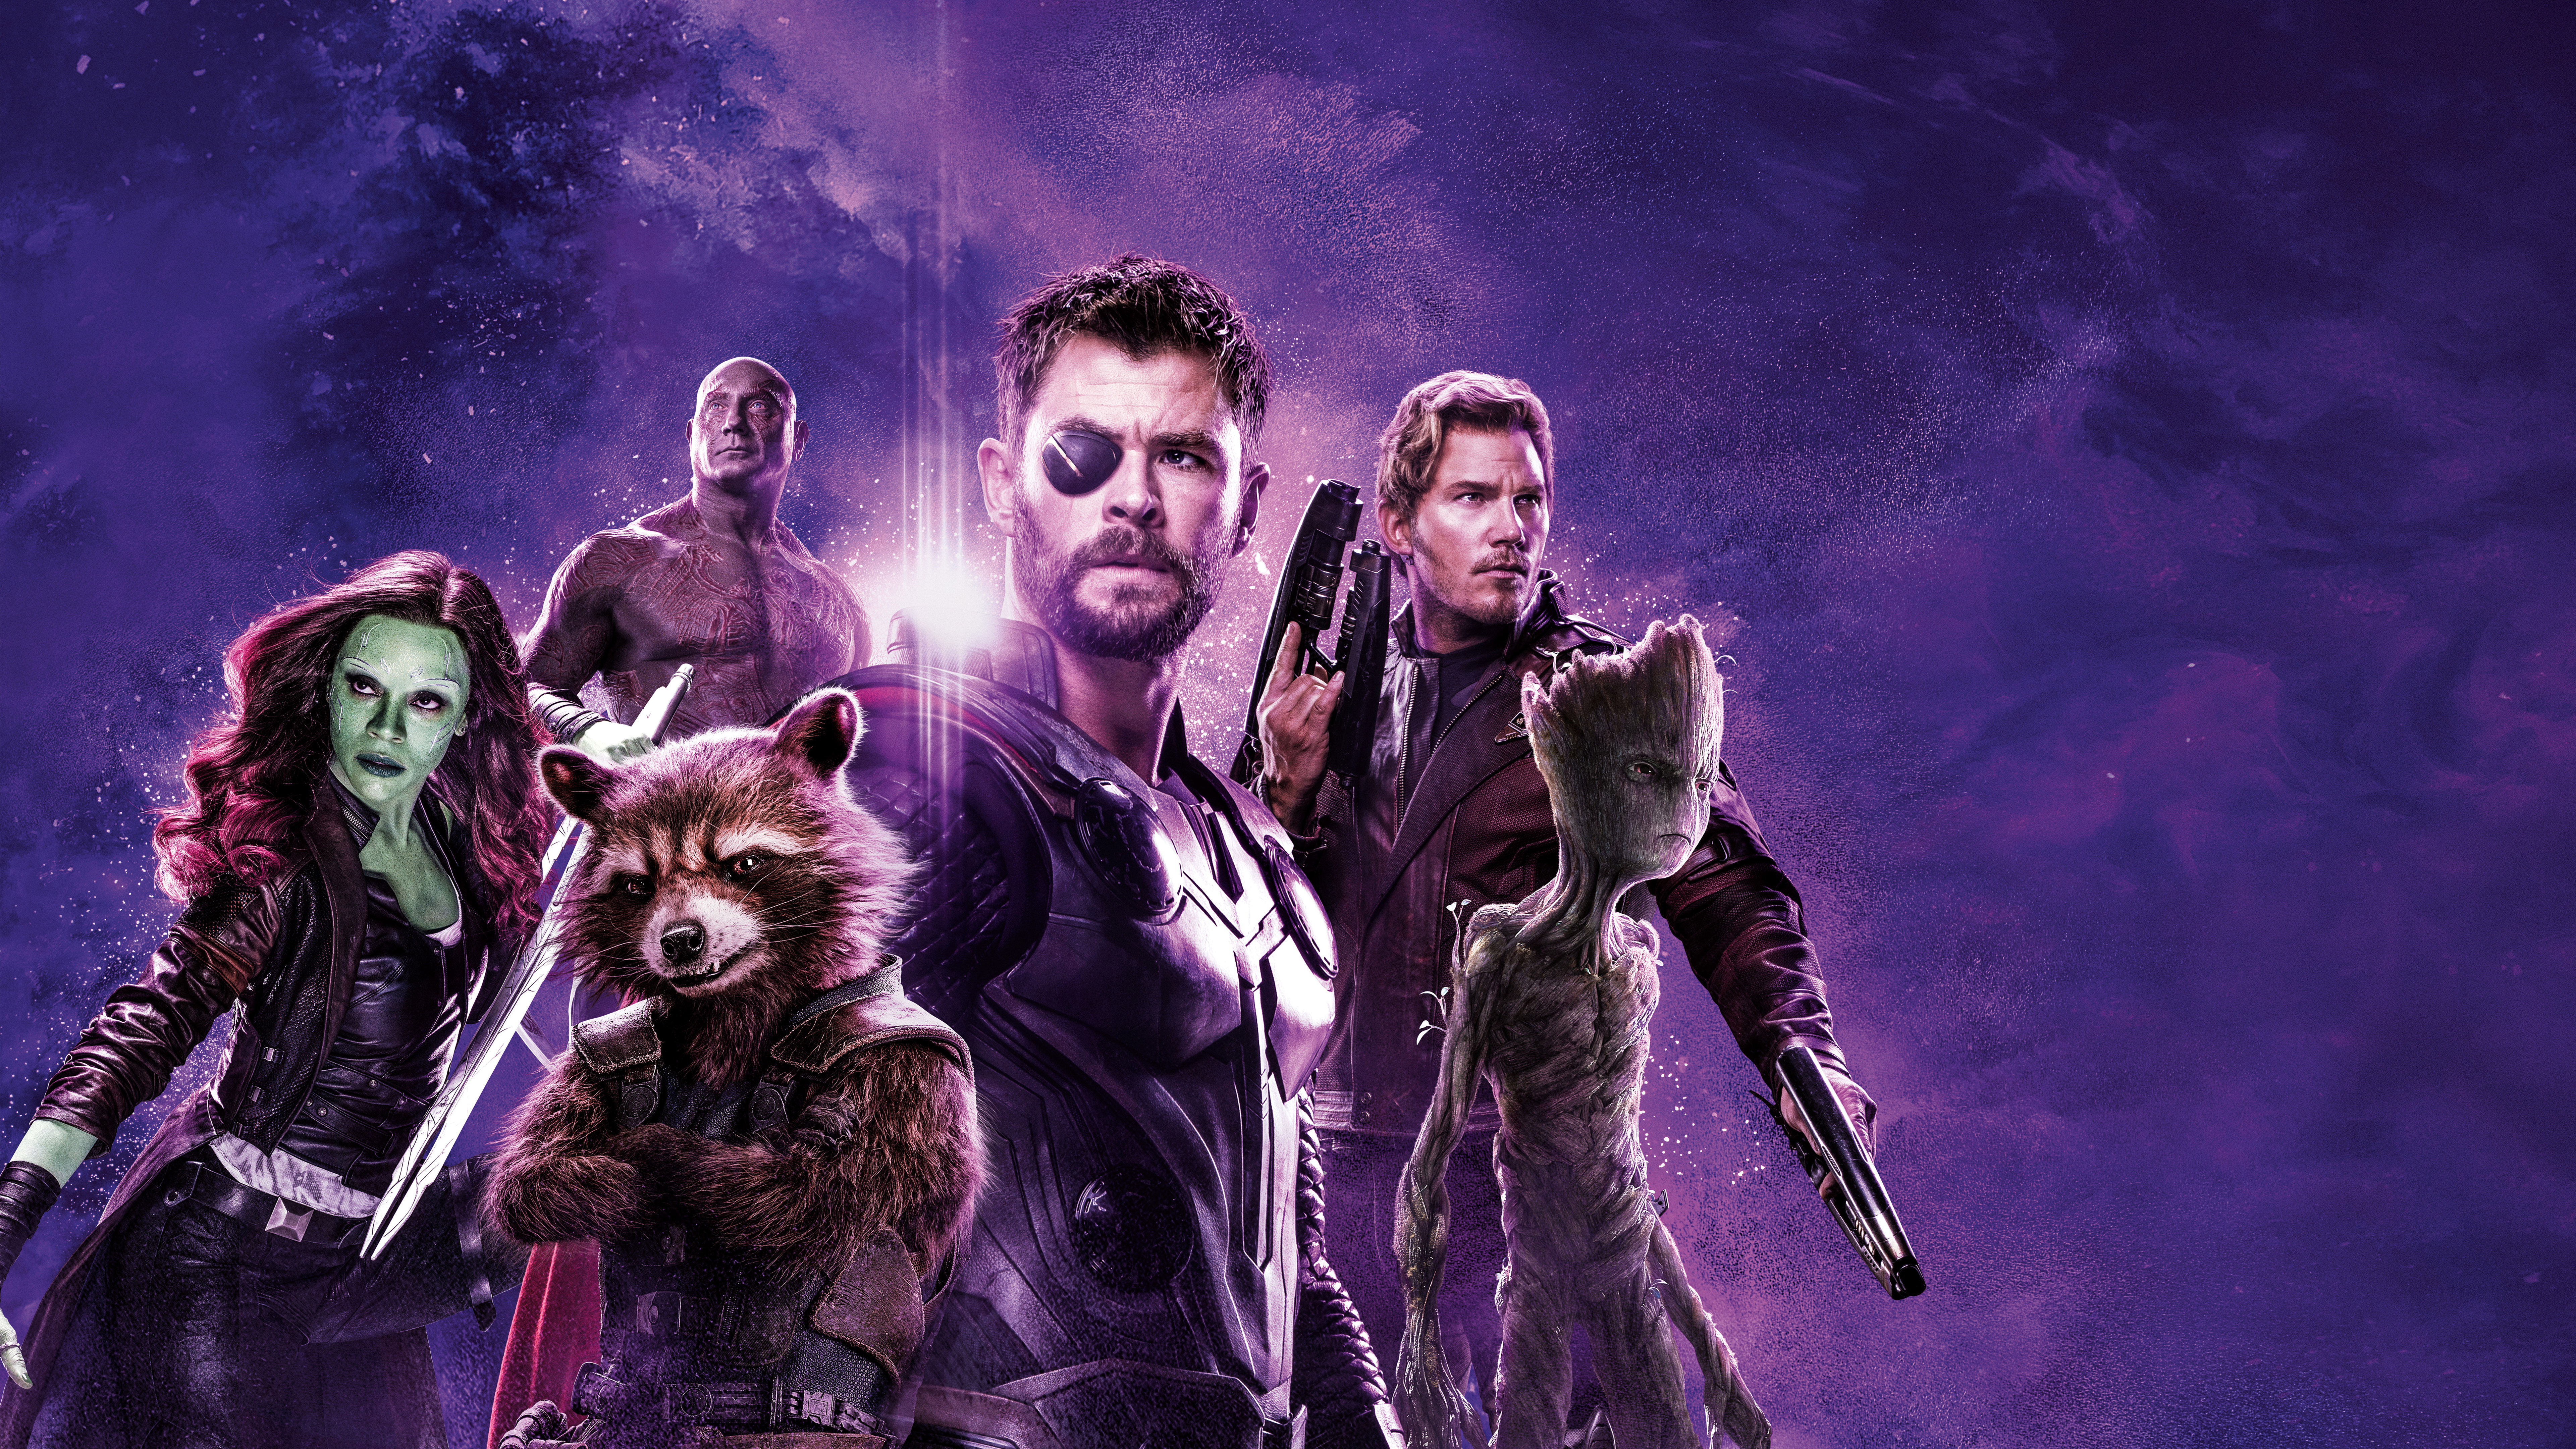 Avengers Endgame Thor Team 4K 8K Wallpapers